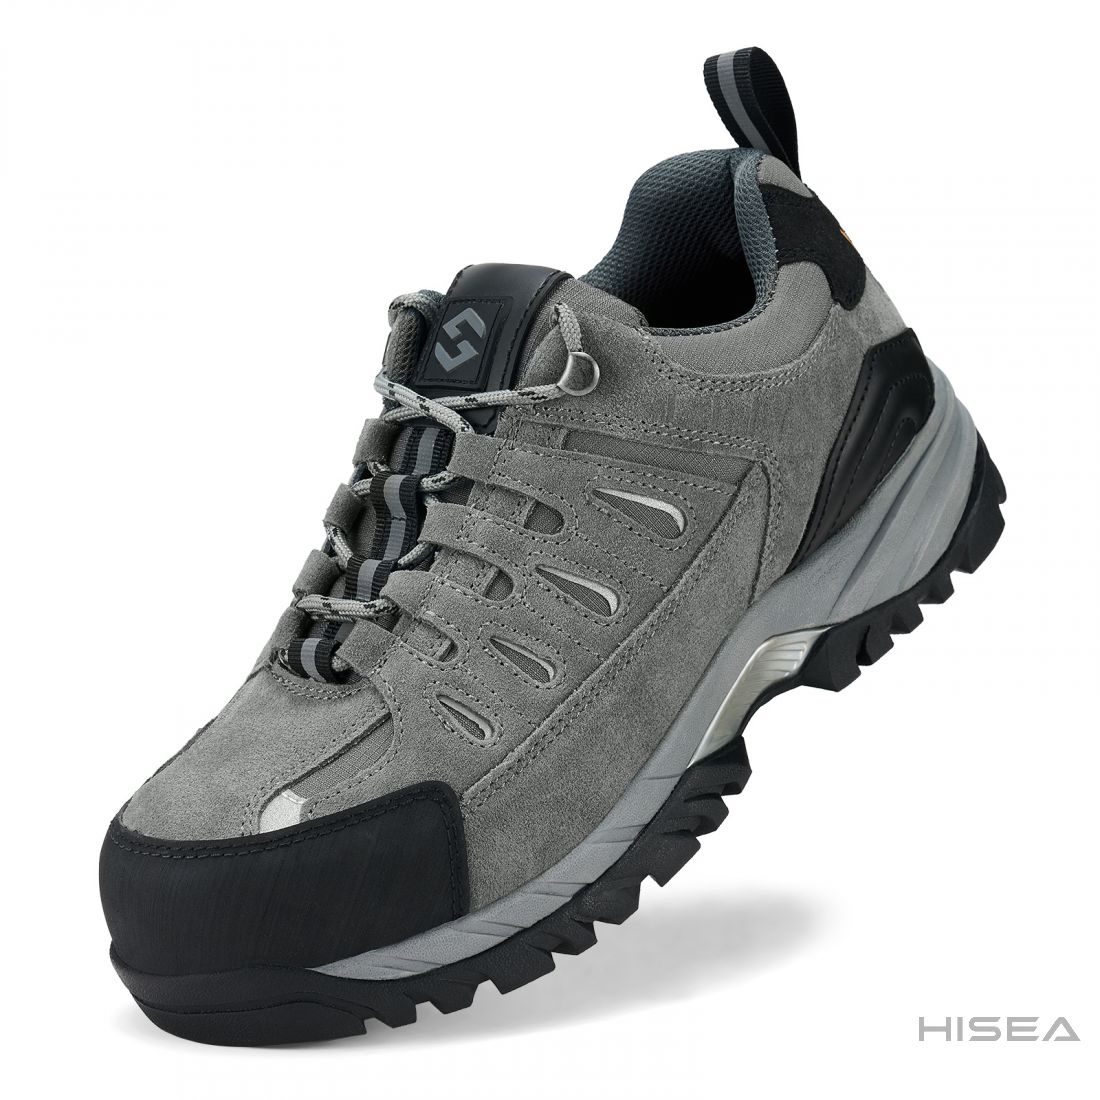 Men's Composite Toe Work Shoes